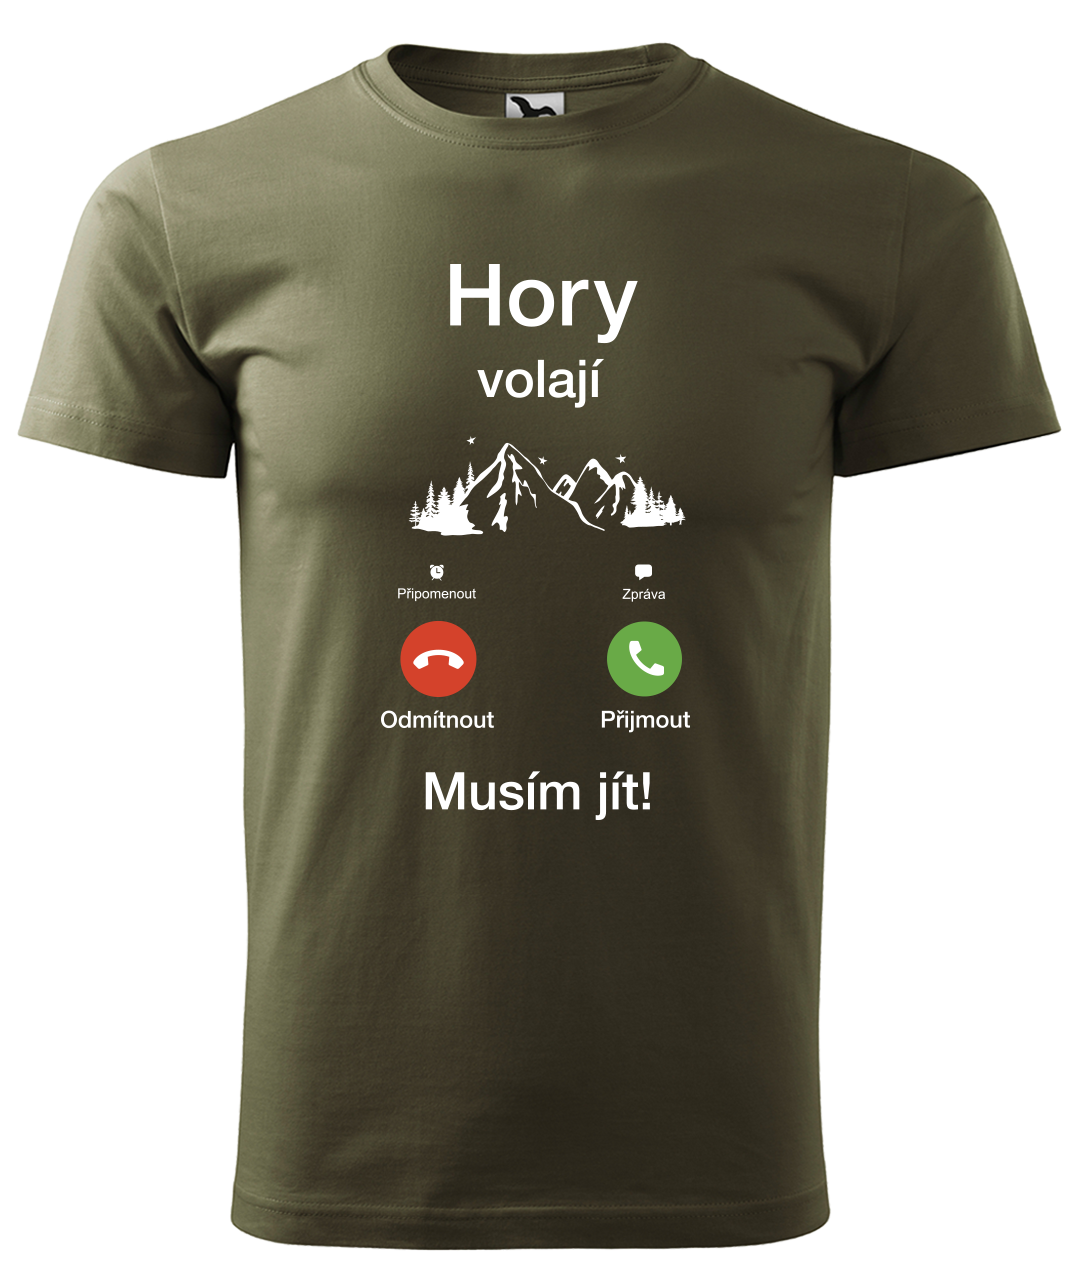 Dětské tričko na hory - Hory volají, musím jít (telefon) Velikost: 4 roky / 110 cm, Barva: Military (69)